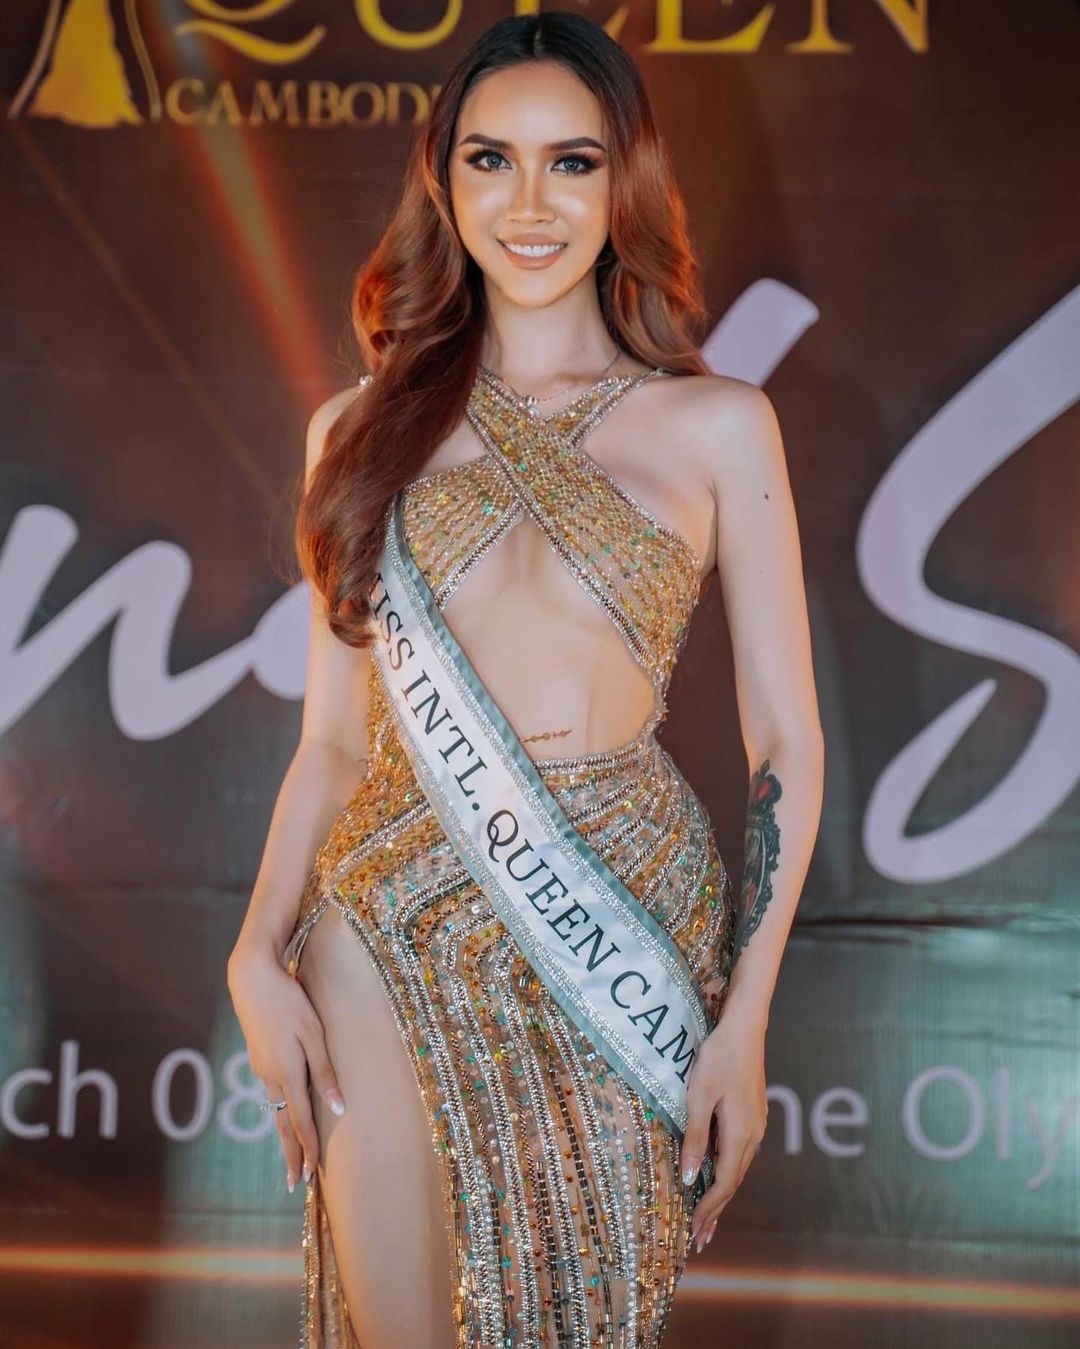 Người đẹp chuyển giới gây chú ý ở Hoa hậu Hoàn vũ Campuchia - Ảnh 5.